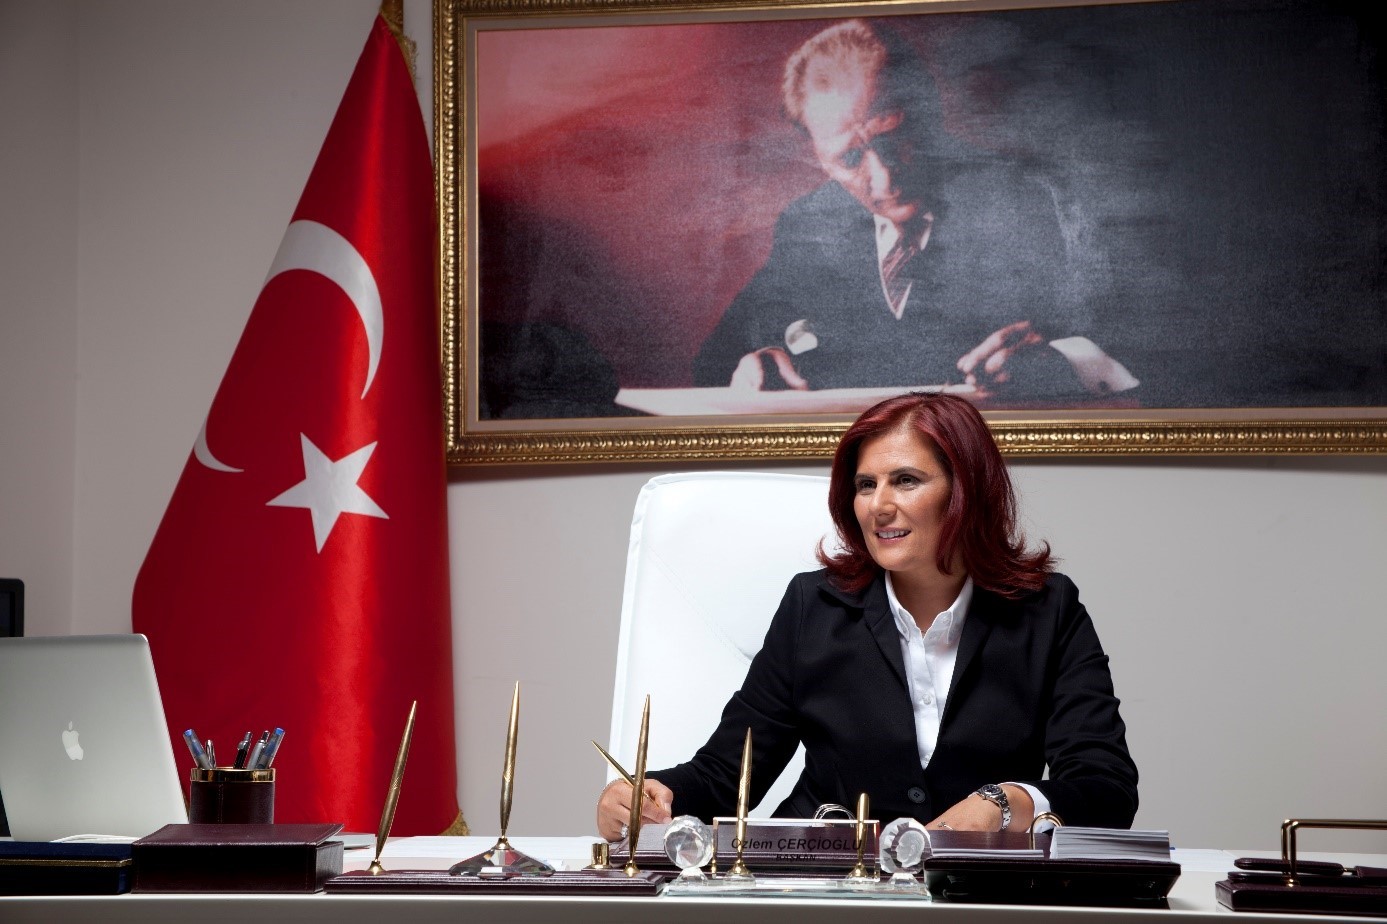 Başkan Çerçioğlu: “Cumhuriyet, şanlı bir zafer ürünüdür”